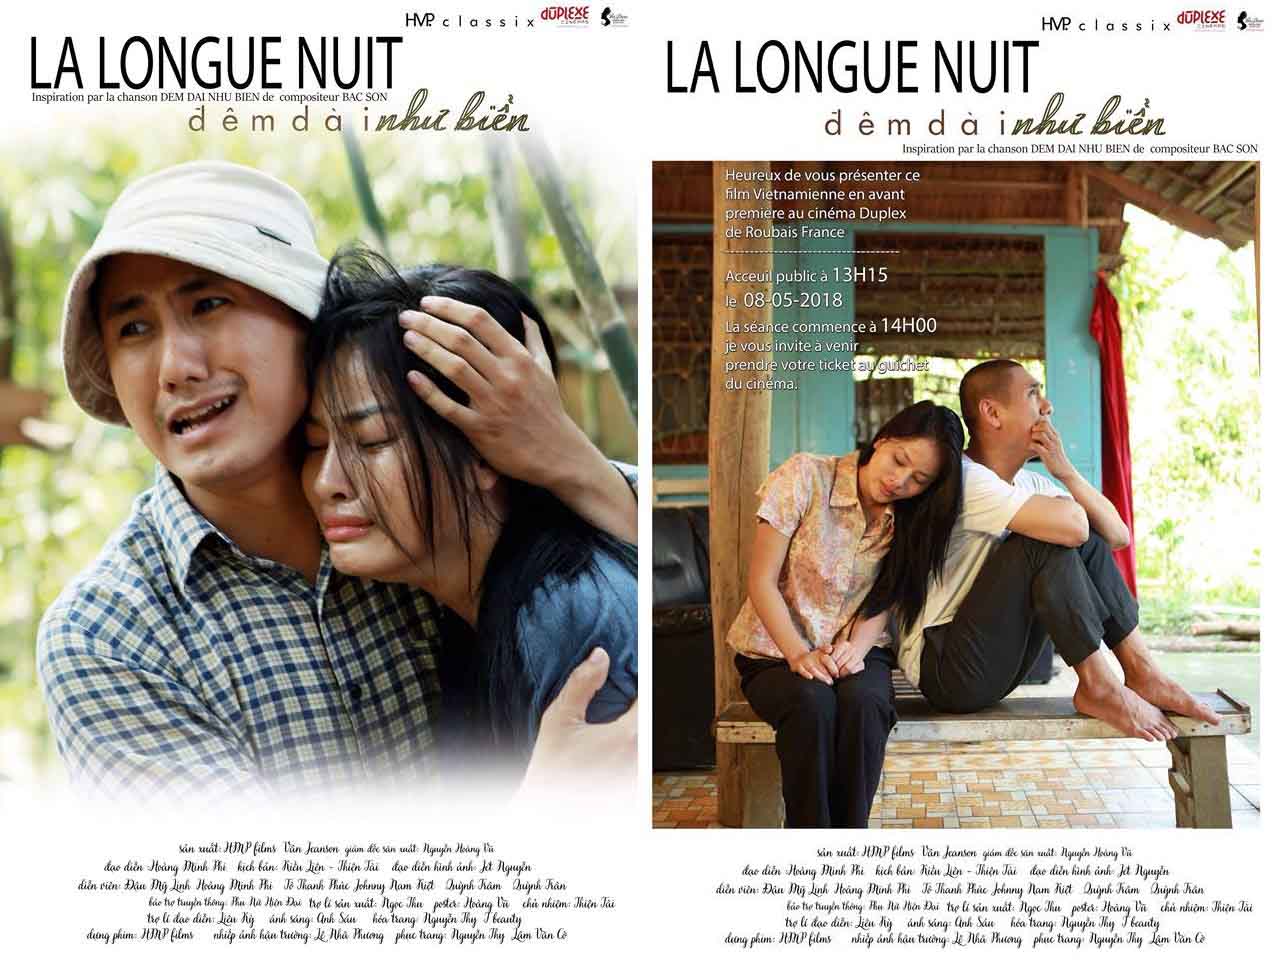 Phim Việt của Hoàng Minh Phi trình chiếu tại Pháp hôm nay